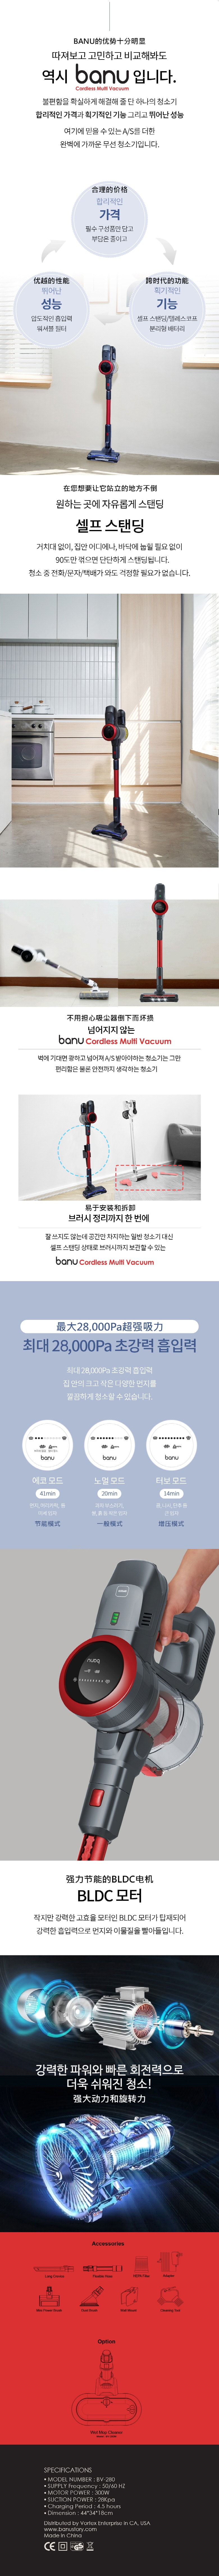 韩国 BANU 强力手持式吸尘器 比戴森更强 28 Kpa (可选拖把头)